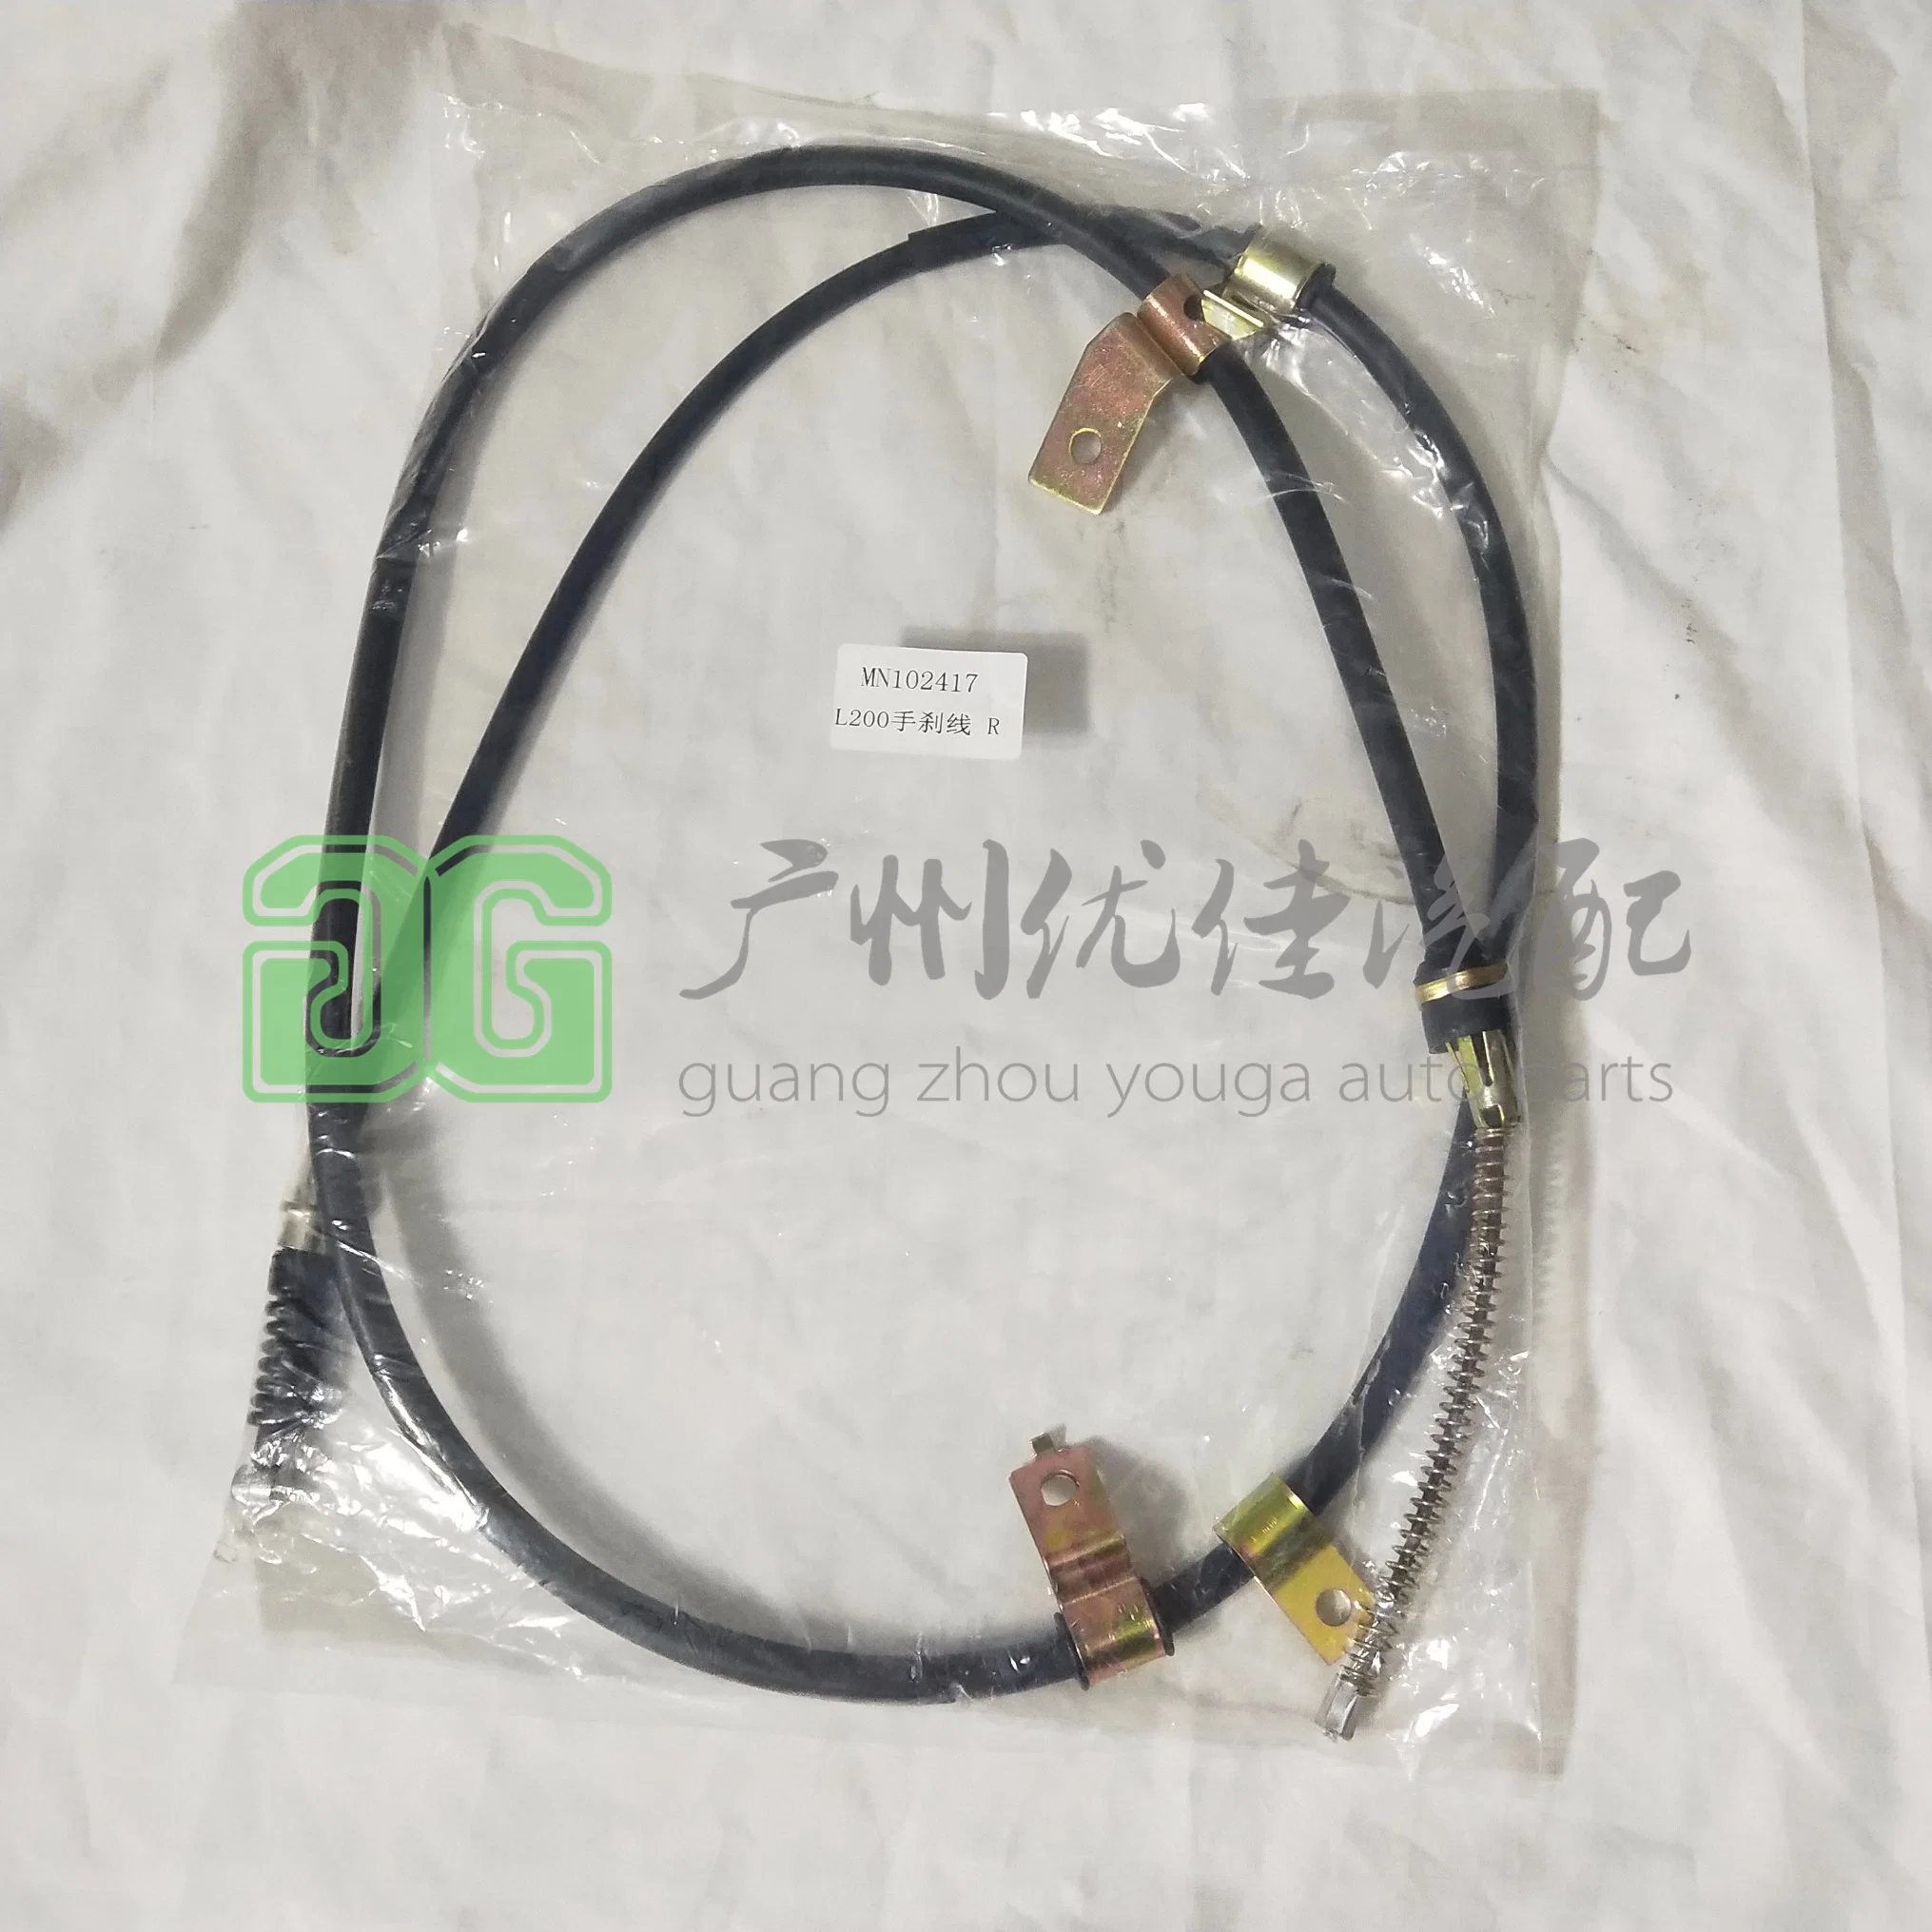 Parking Brake Cable for Mitsubishi Triton L200 Ka4t Kb4t Kb8t Mn102417